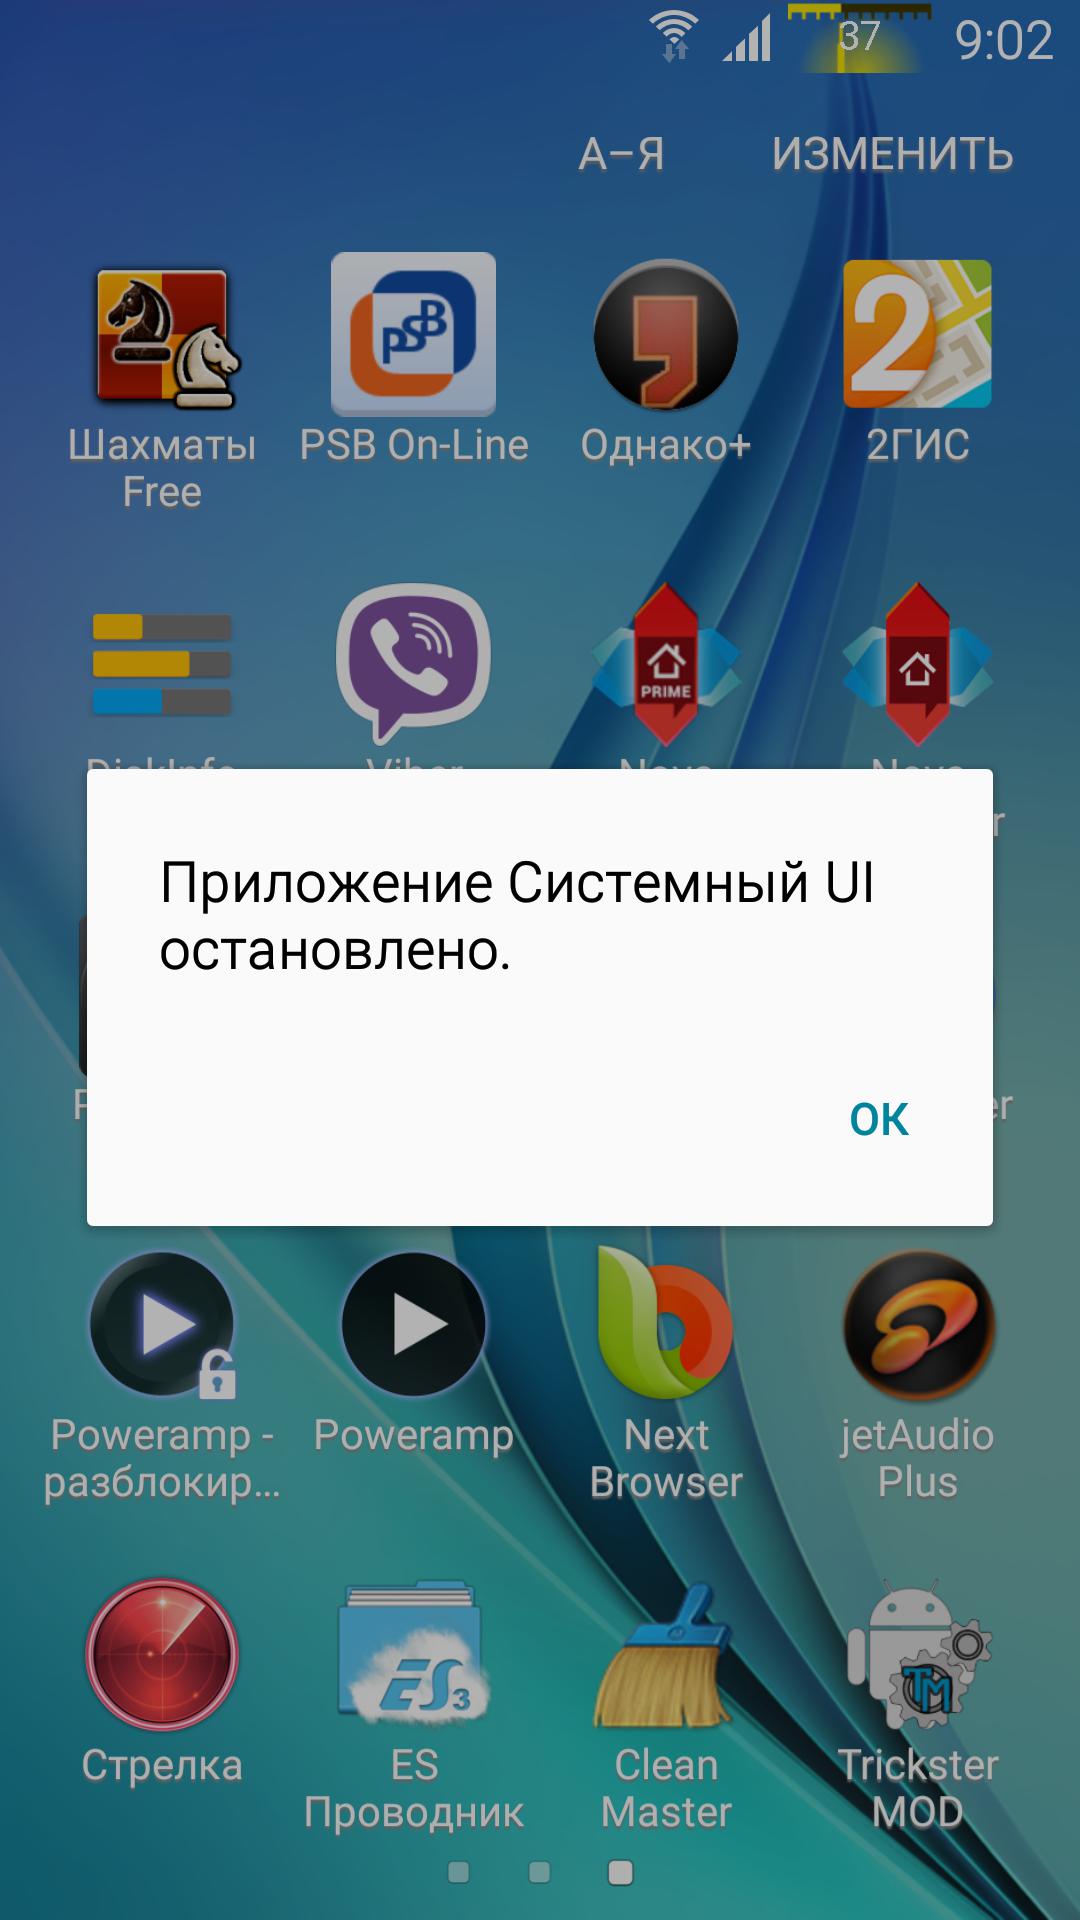 "Приложение Системный UI остановлено" на Samsung Galaxy S7. Что делать?